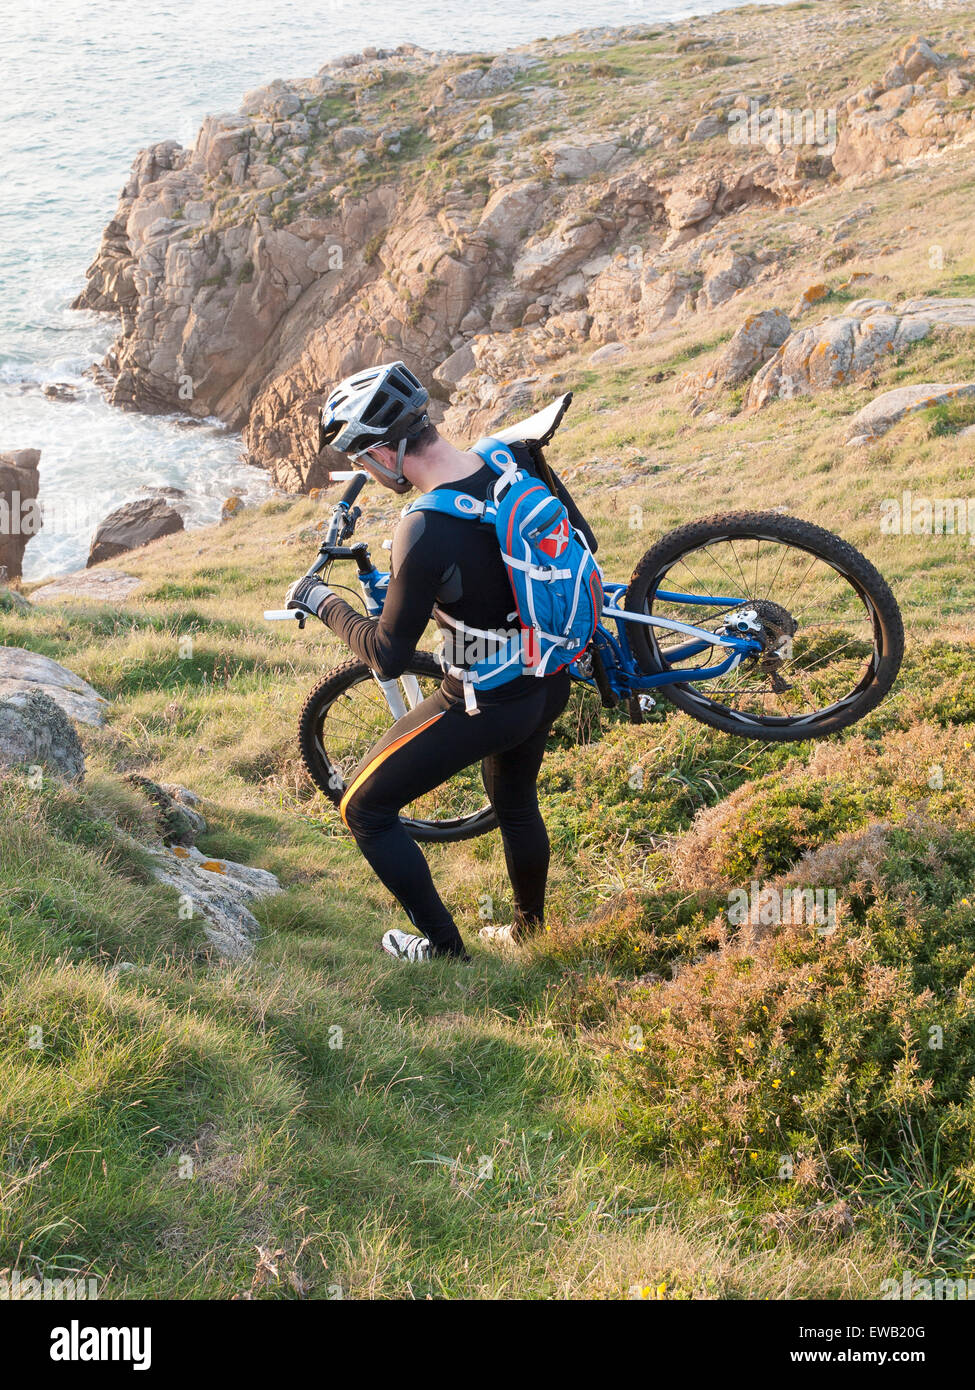 Ciclista portare la bici sulla costa della Galizia. L'uomo si trova in un ambiente piacevole e la pratica della mountain bike. Foto Stock